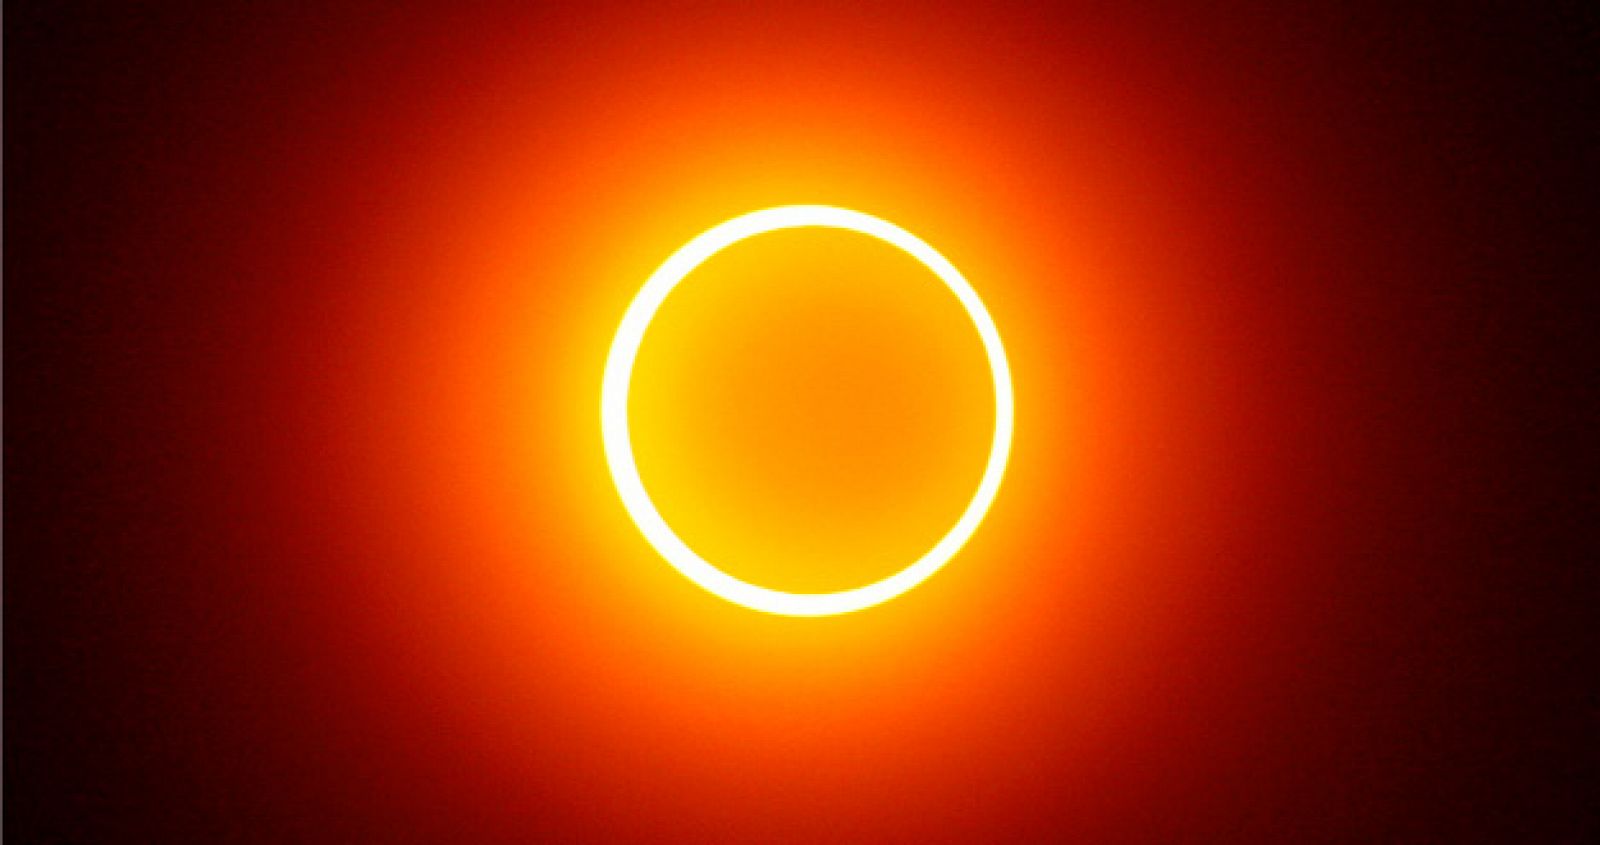 La Luna al pasar entre la Tierra y el Sol produce el efecto óptico conocido como "anillo solar"